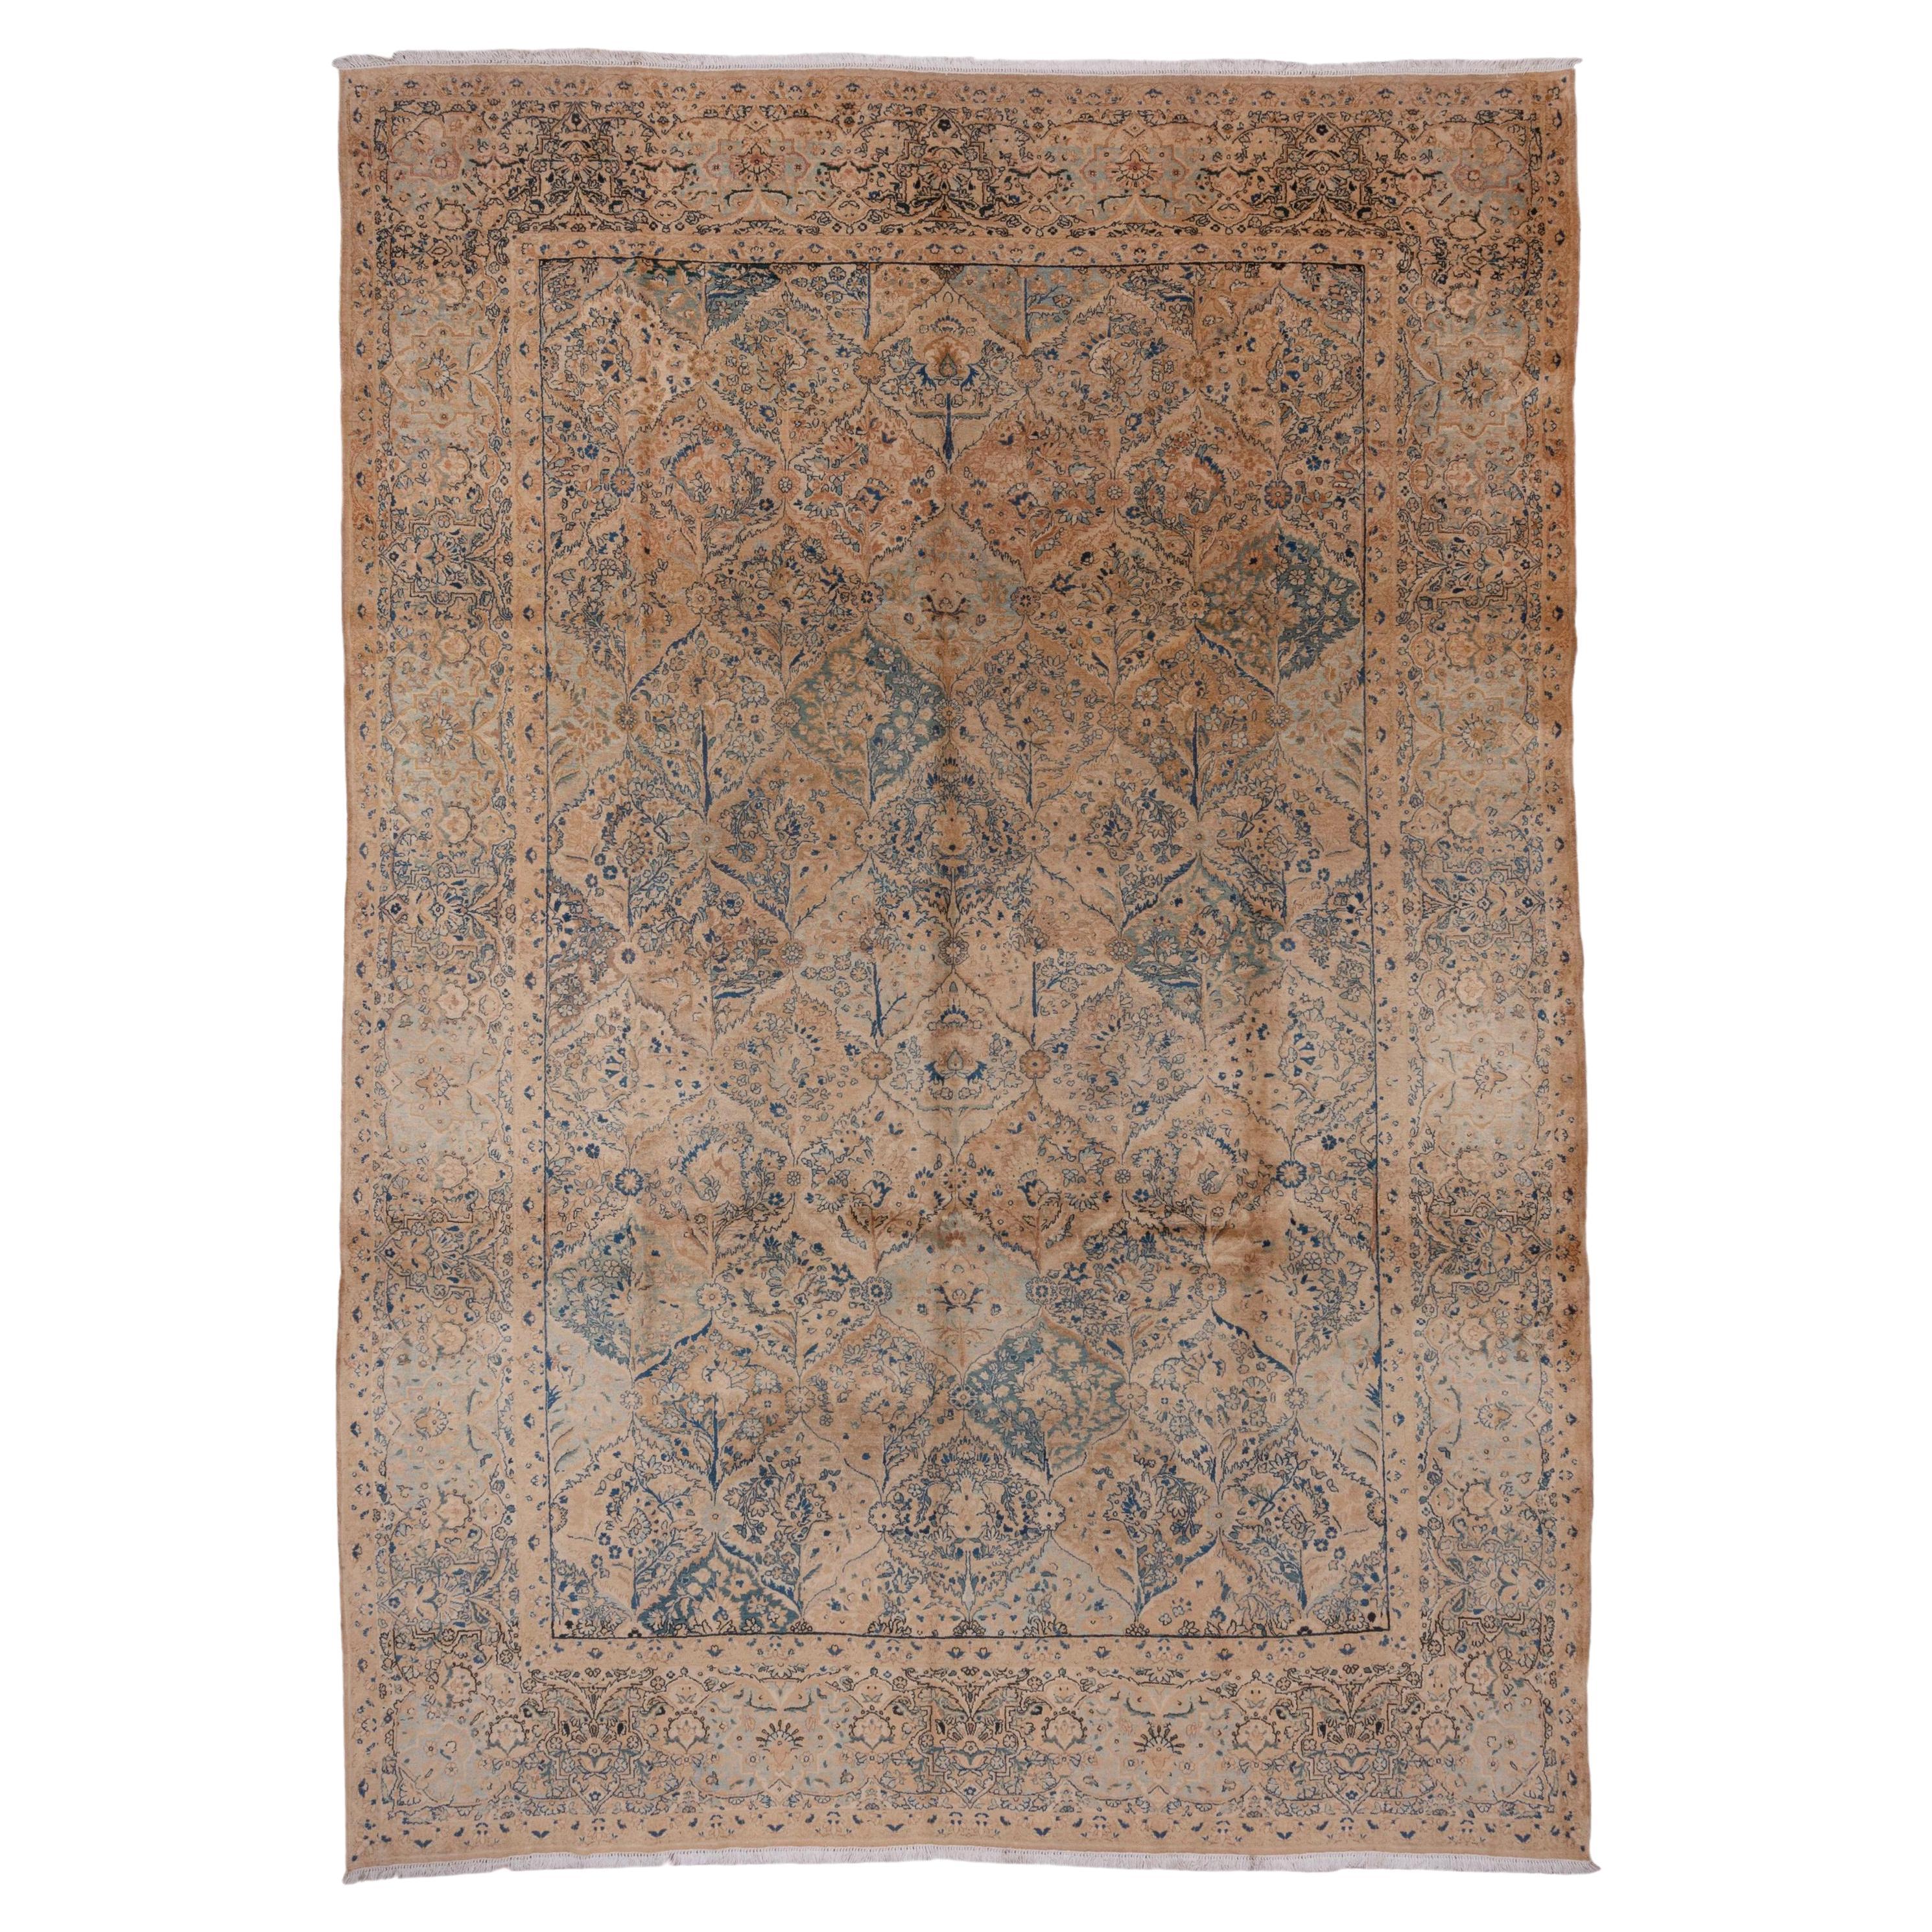 Classic Antique Persian Kerman Carpet, Beige & Blue Palette, circa 1930s For Sale